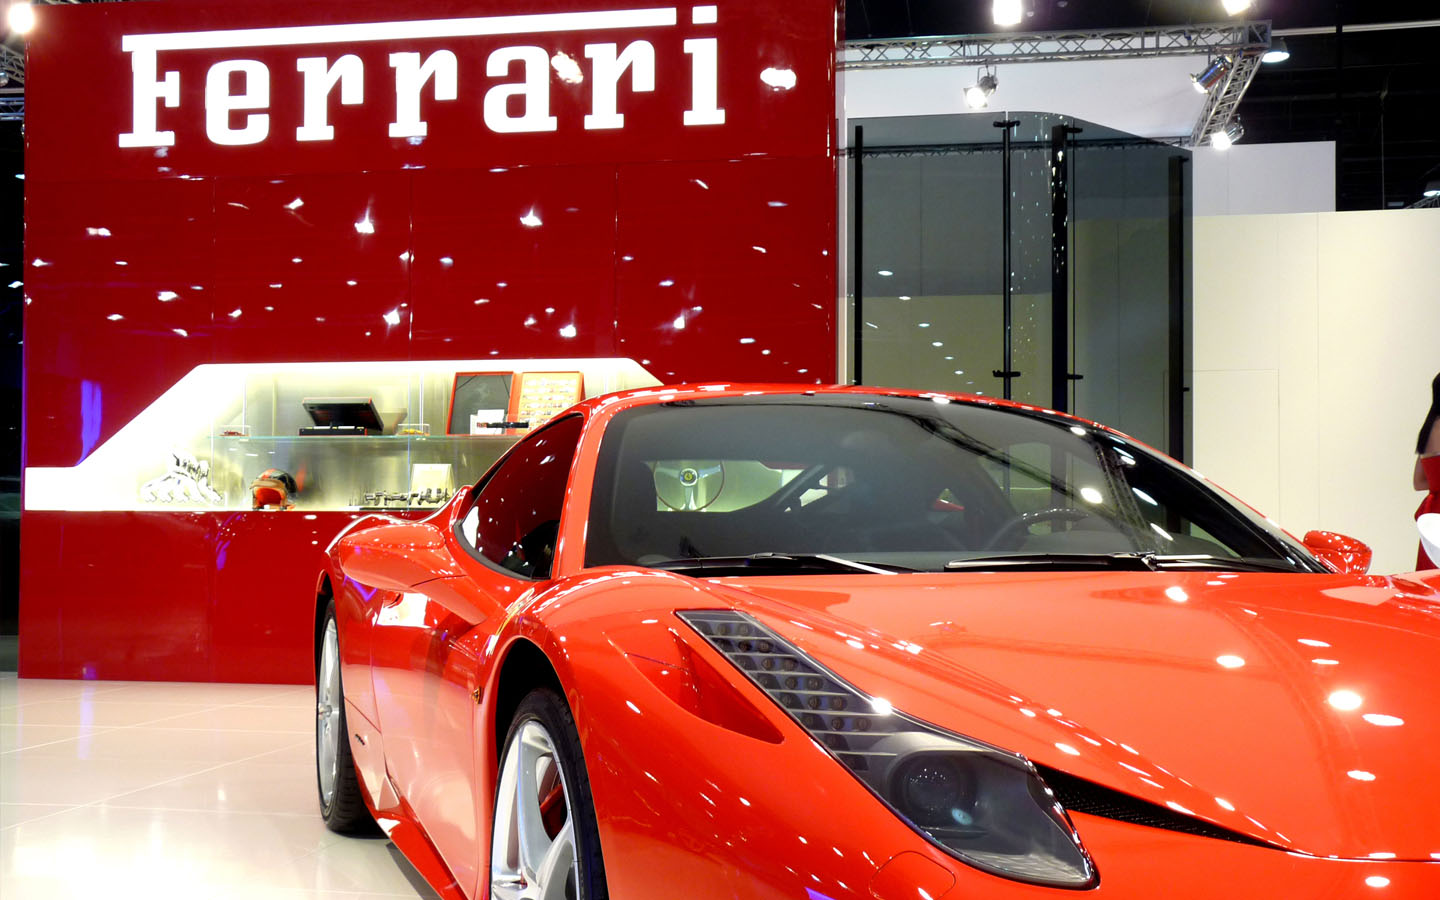 Ferrari showroom in Abu Dhabi